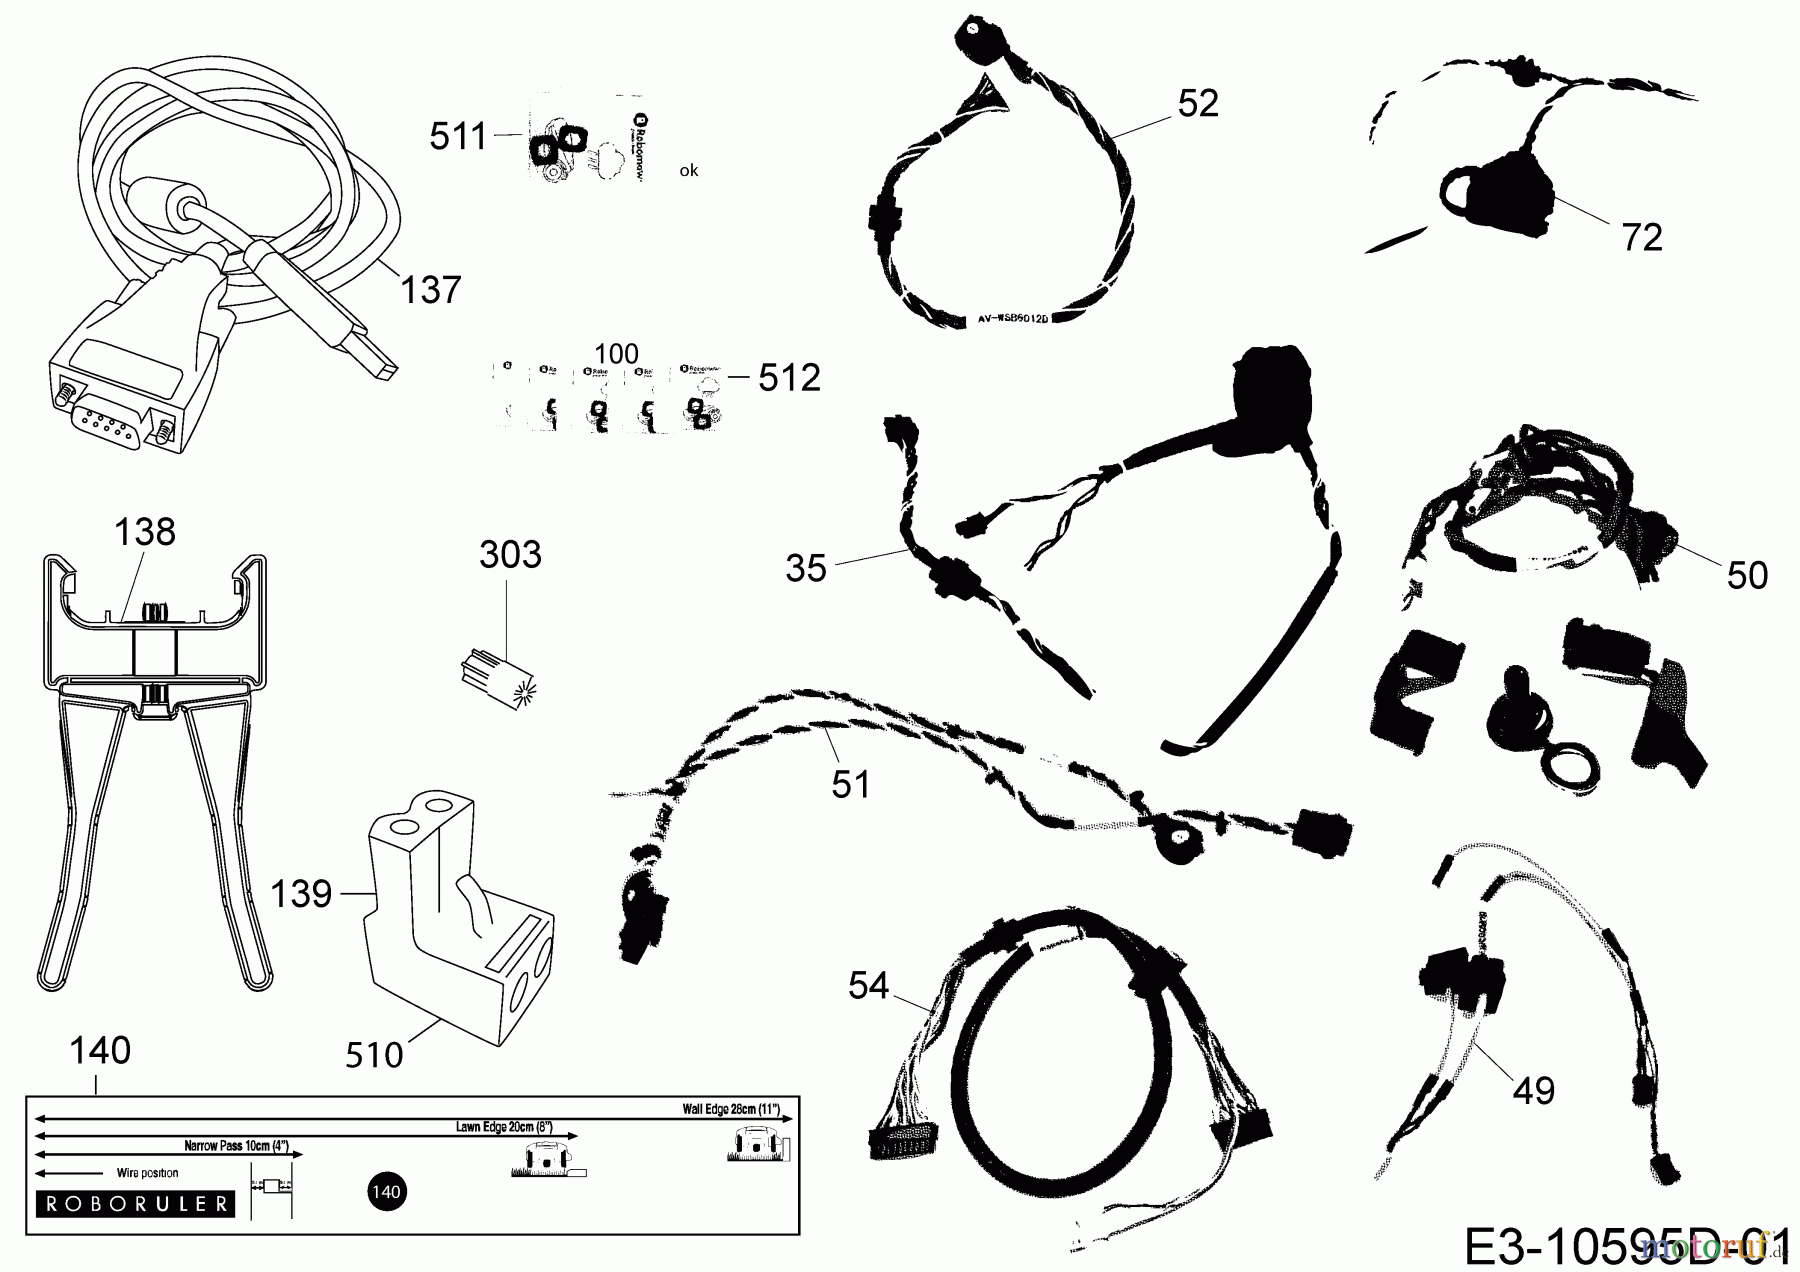  Robomow Mähroboter MS 1500 (White) PRD6100YW  (2016) Kabel, Kabelanschluß, Regensensor, Werkzeug